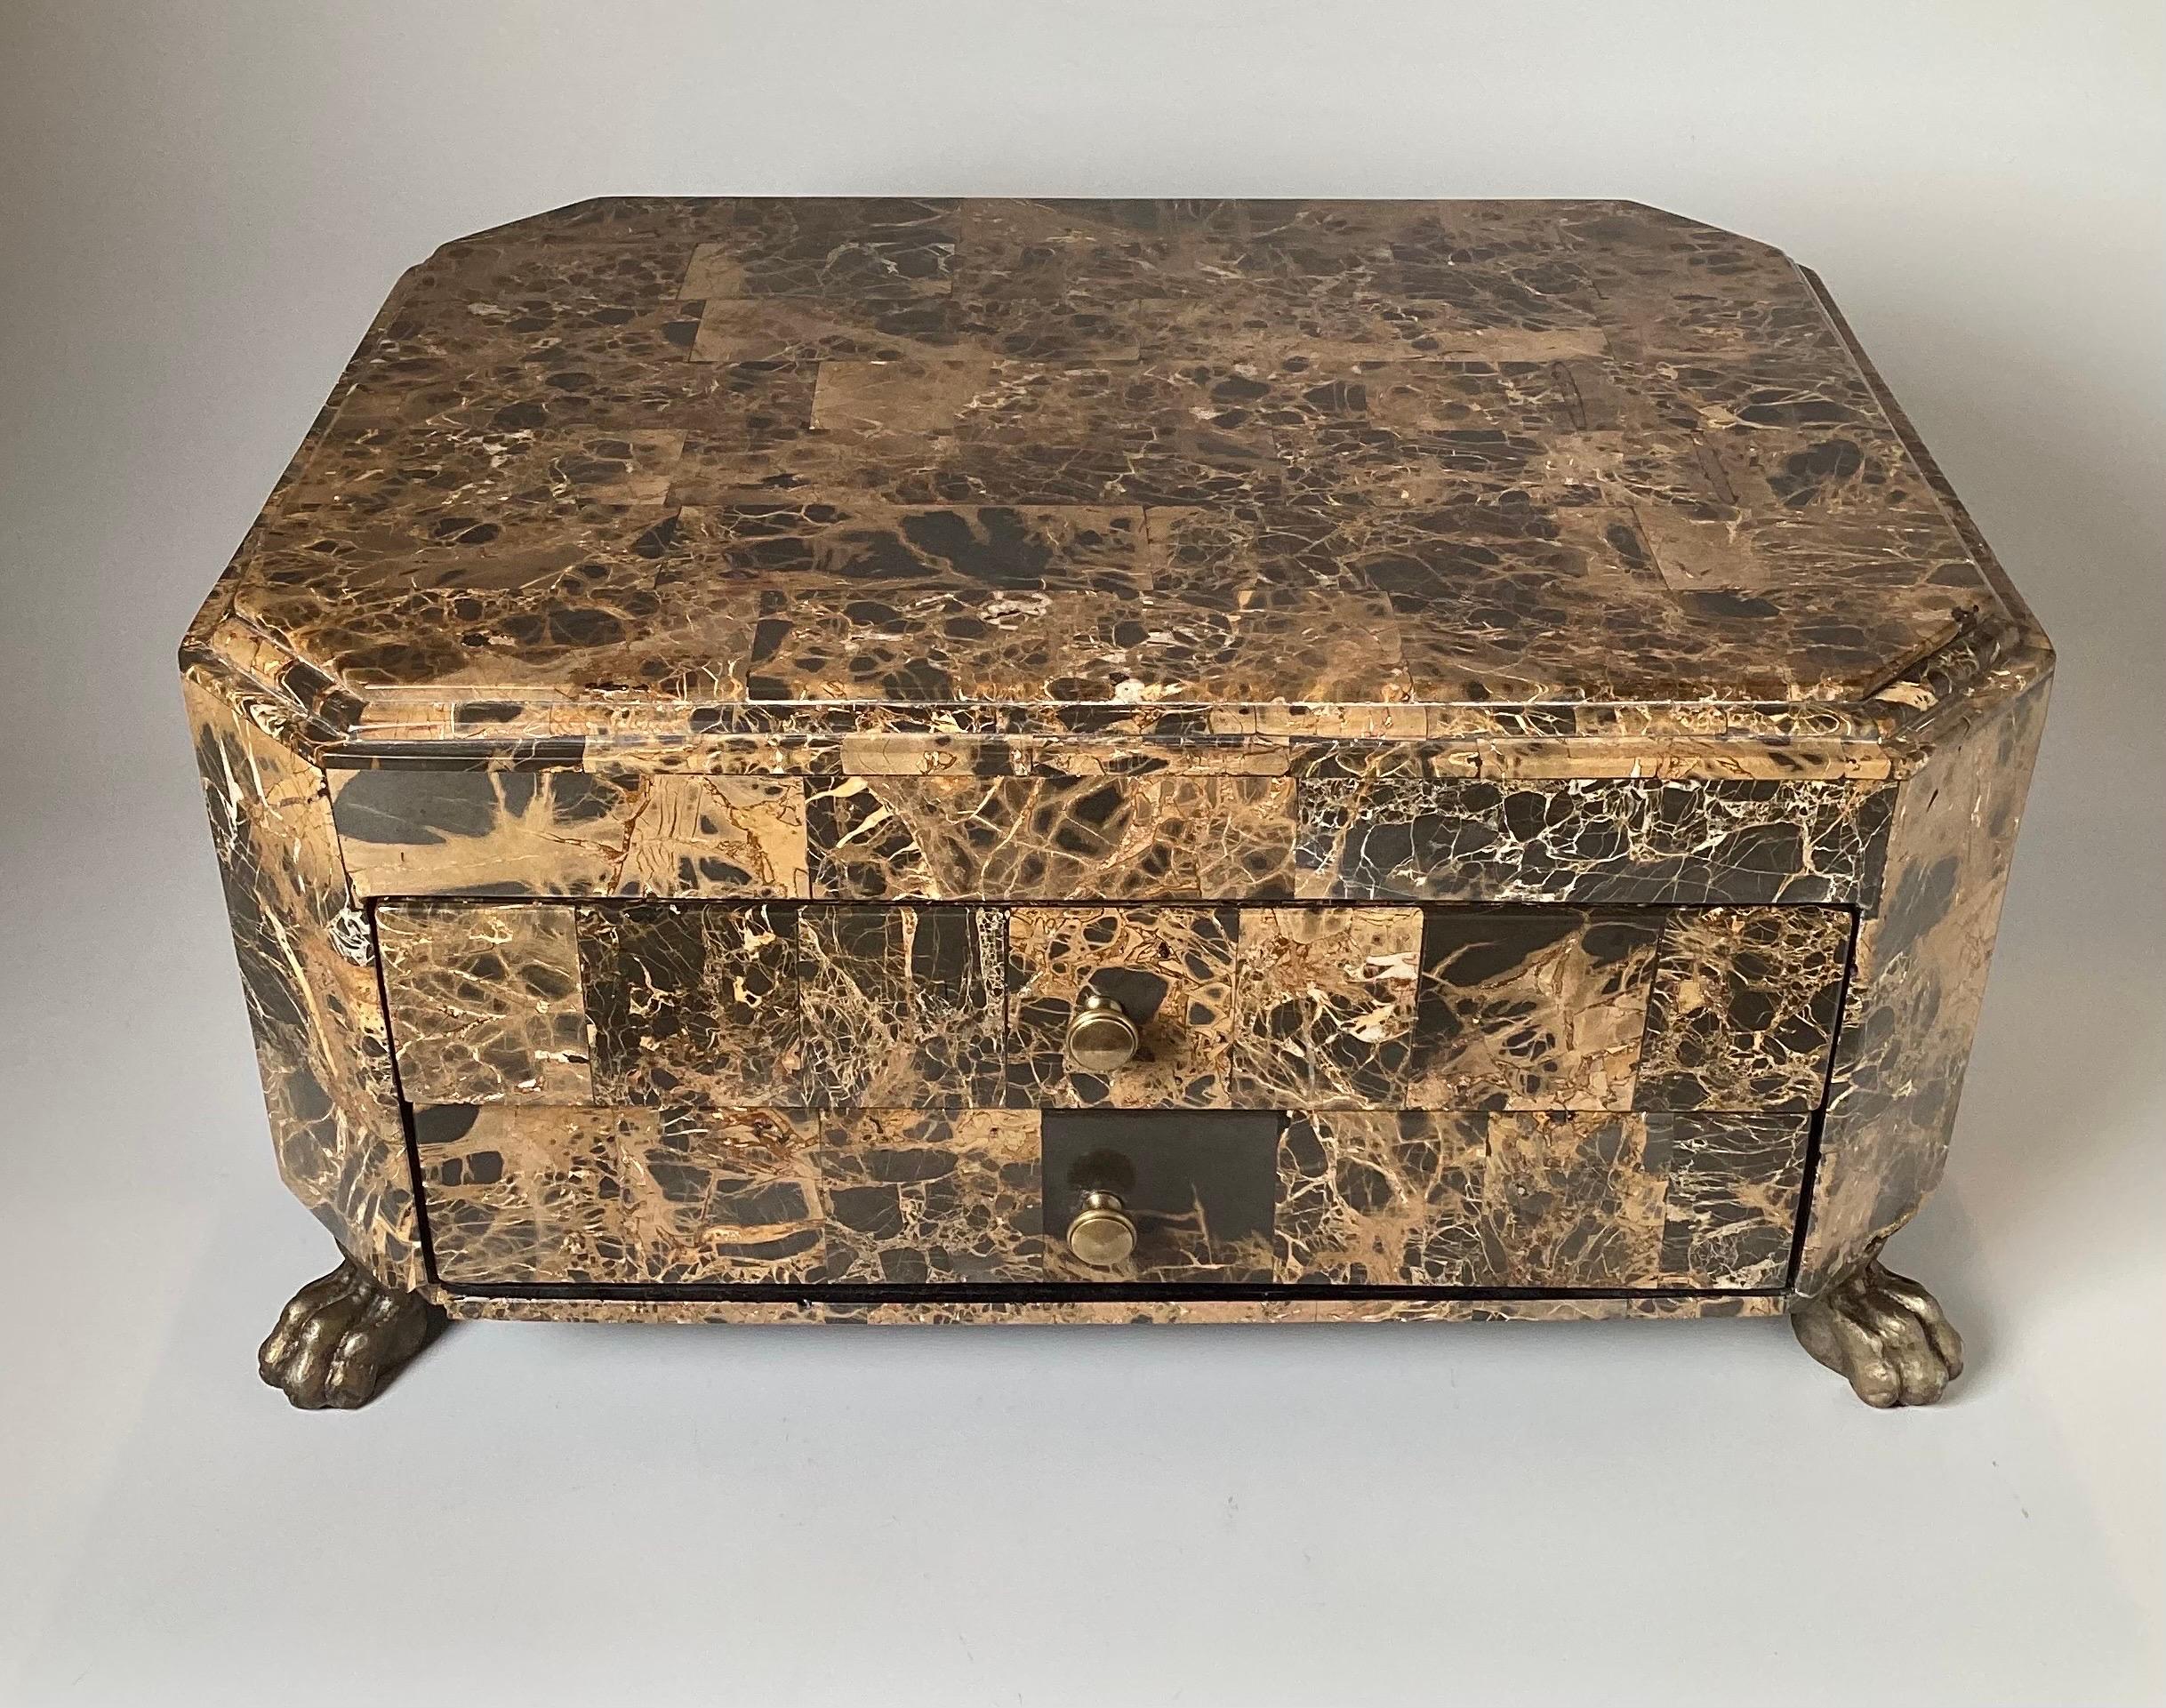 Boîte de table néoclassique chic en pierre dure avec deux tiroirs, La boîte en pierre bariolée brune, blanche et grise avec deux tiroirs frontaux reposant sur des pieds en patte de laiton.